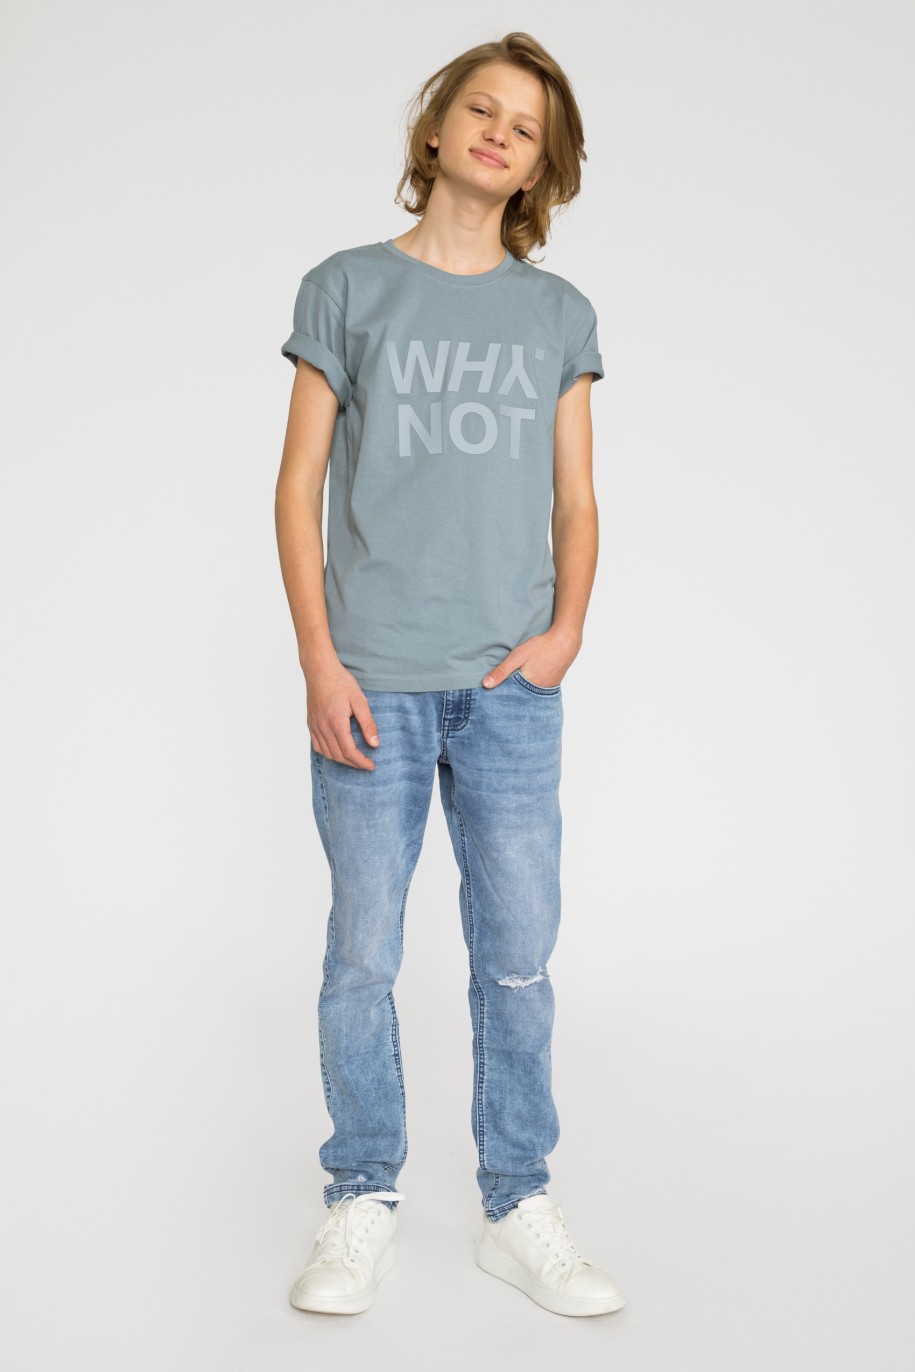 Szary t-shirt dla chłopaka z matowym nadrukiem WHY NOT - 32184